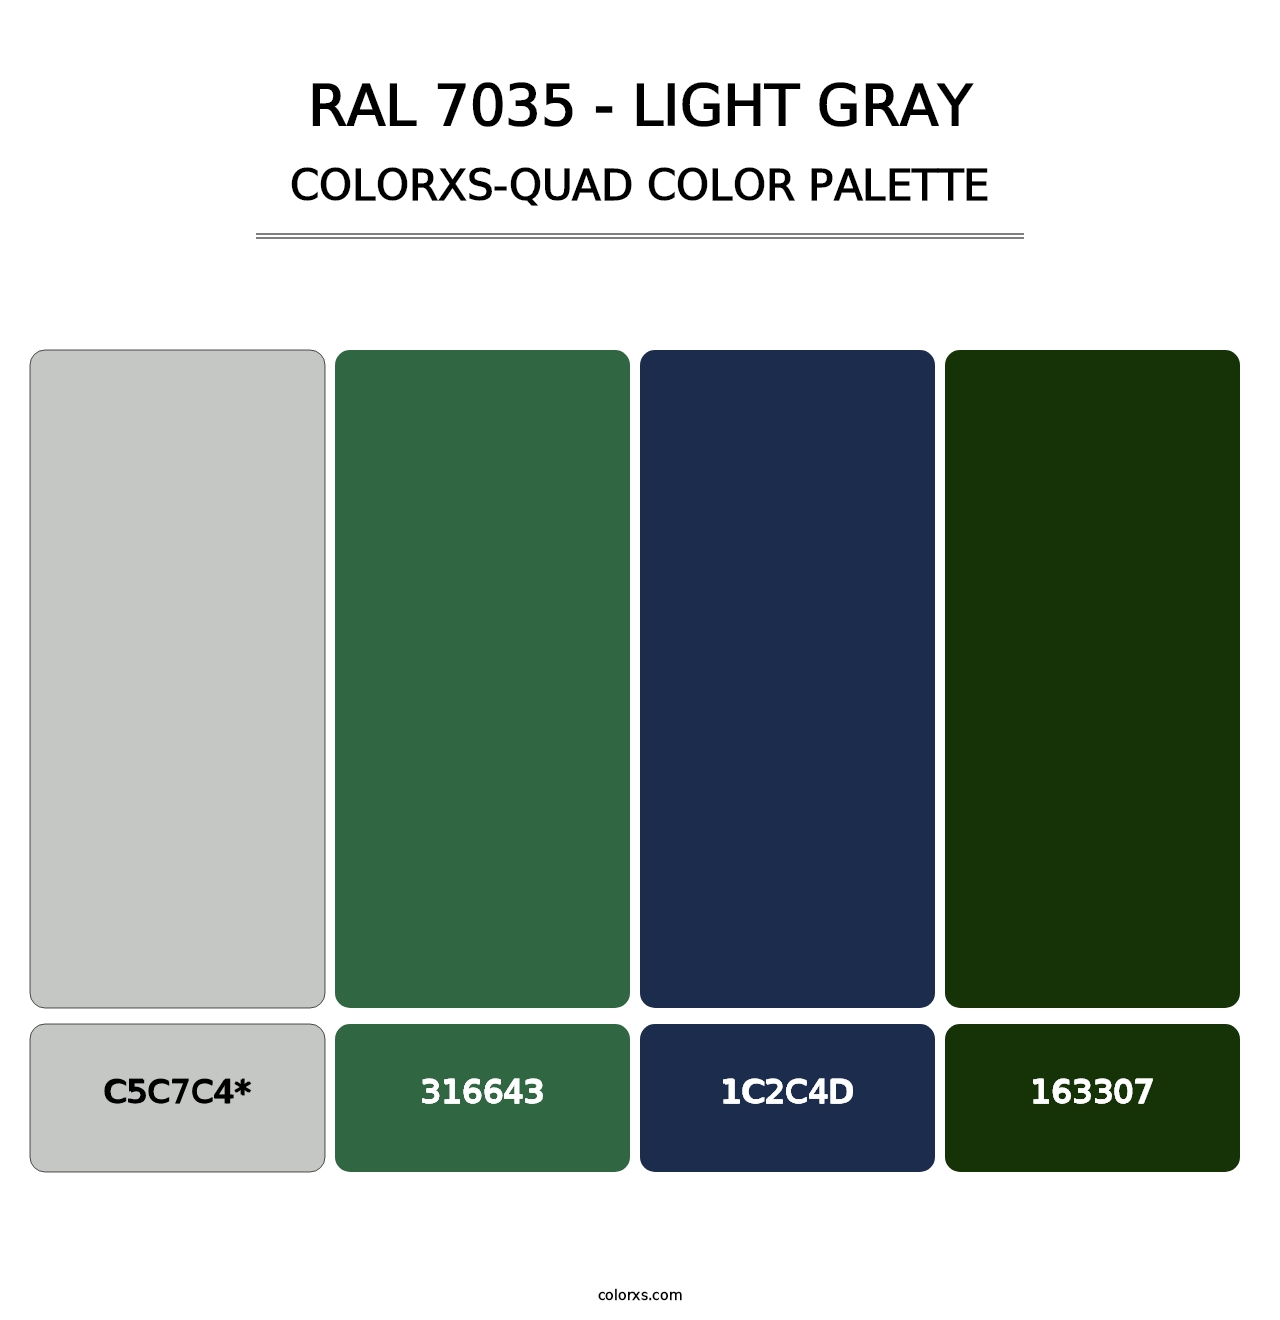 RAL 7035 - Light Gray - Colorxs Quad Palette